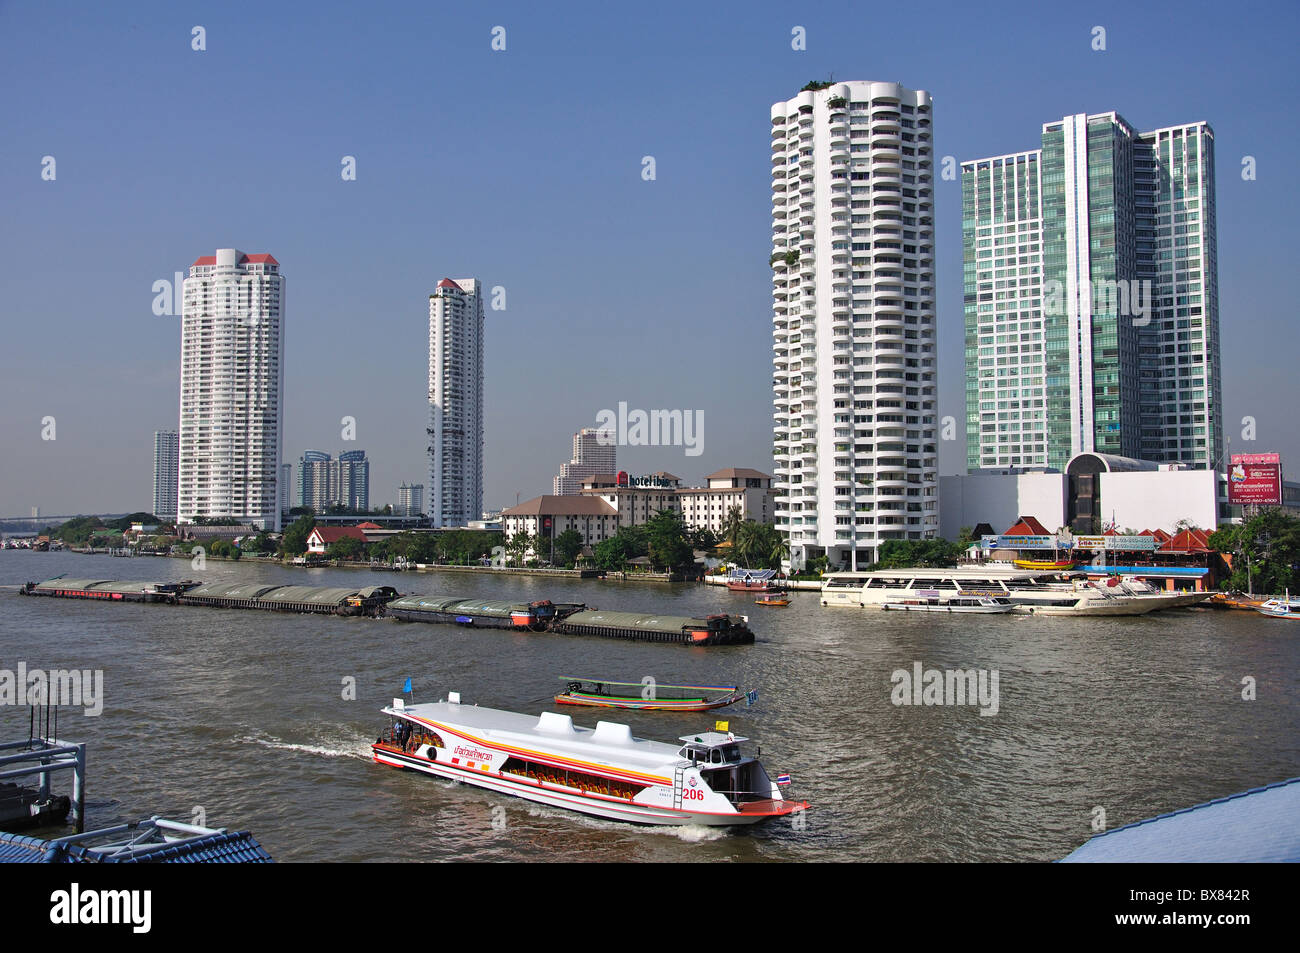 River boats on Chao Phraya River from Bang Rak District, Bangkok, Thailand Stock Photo